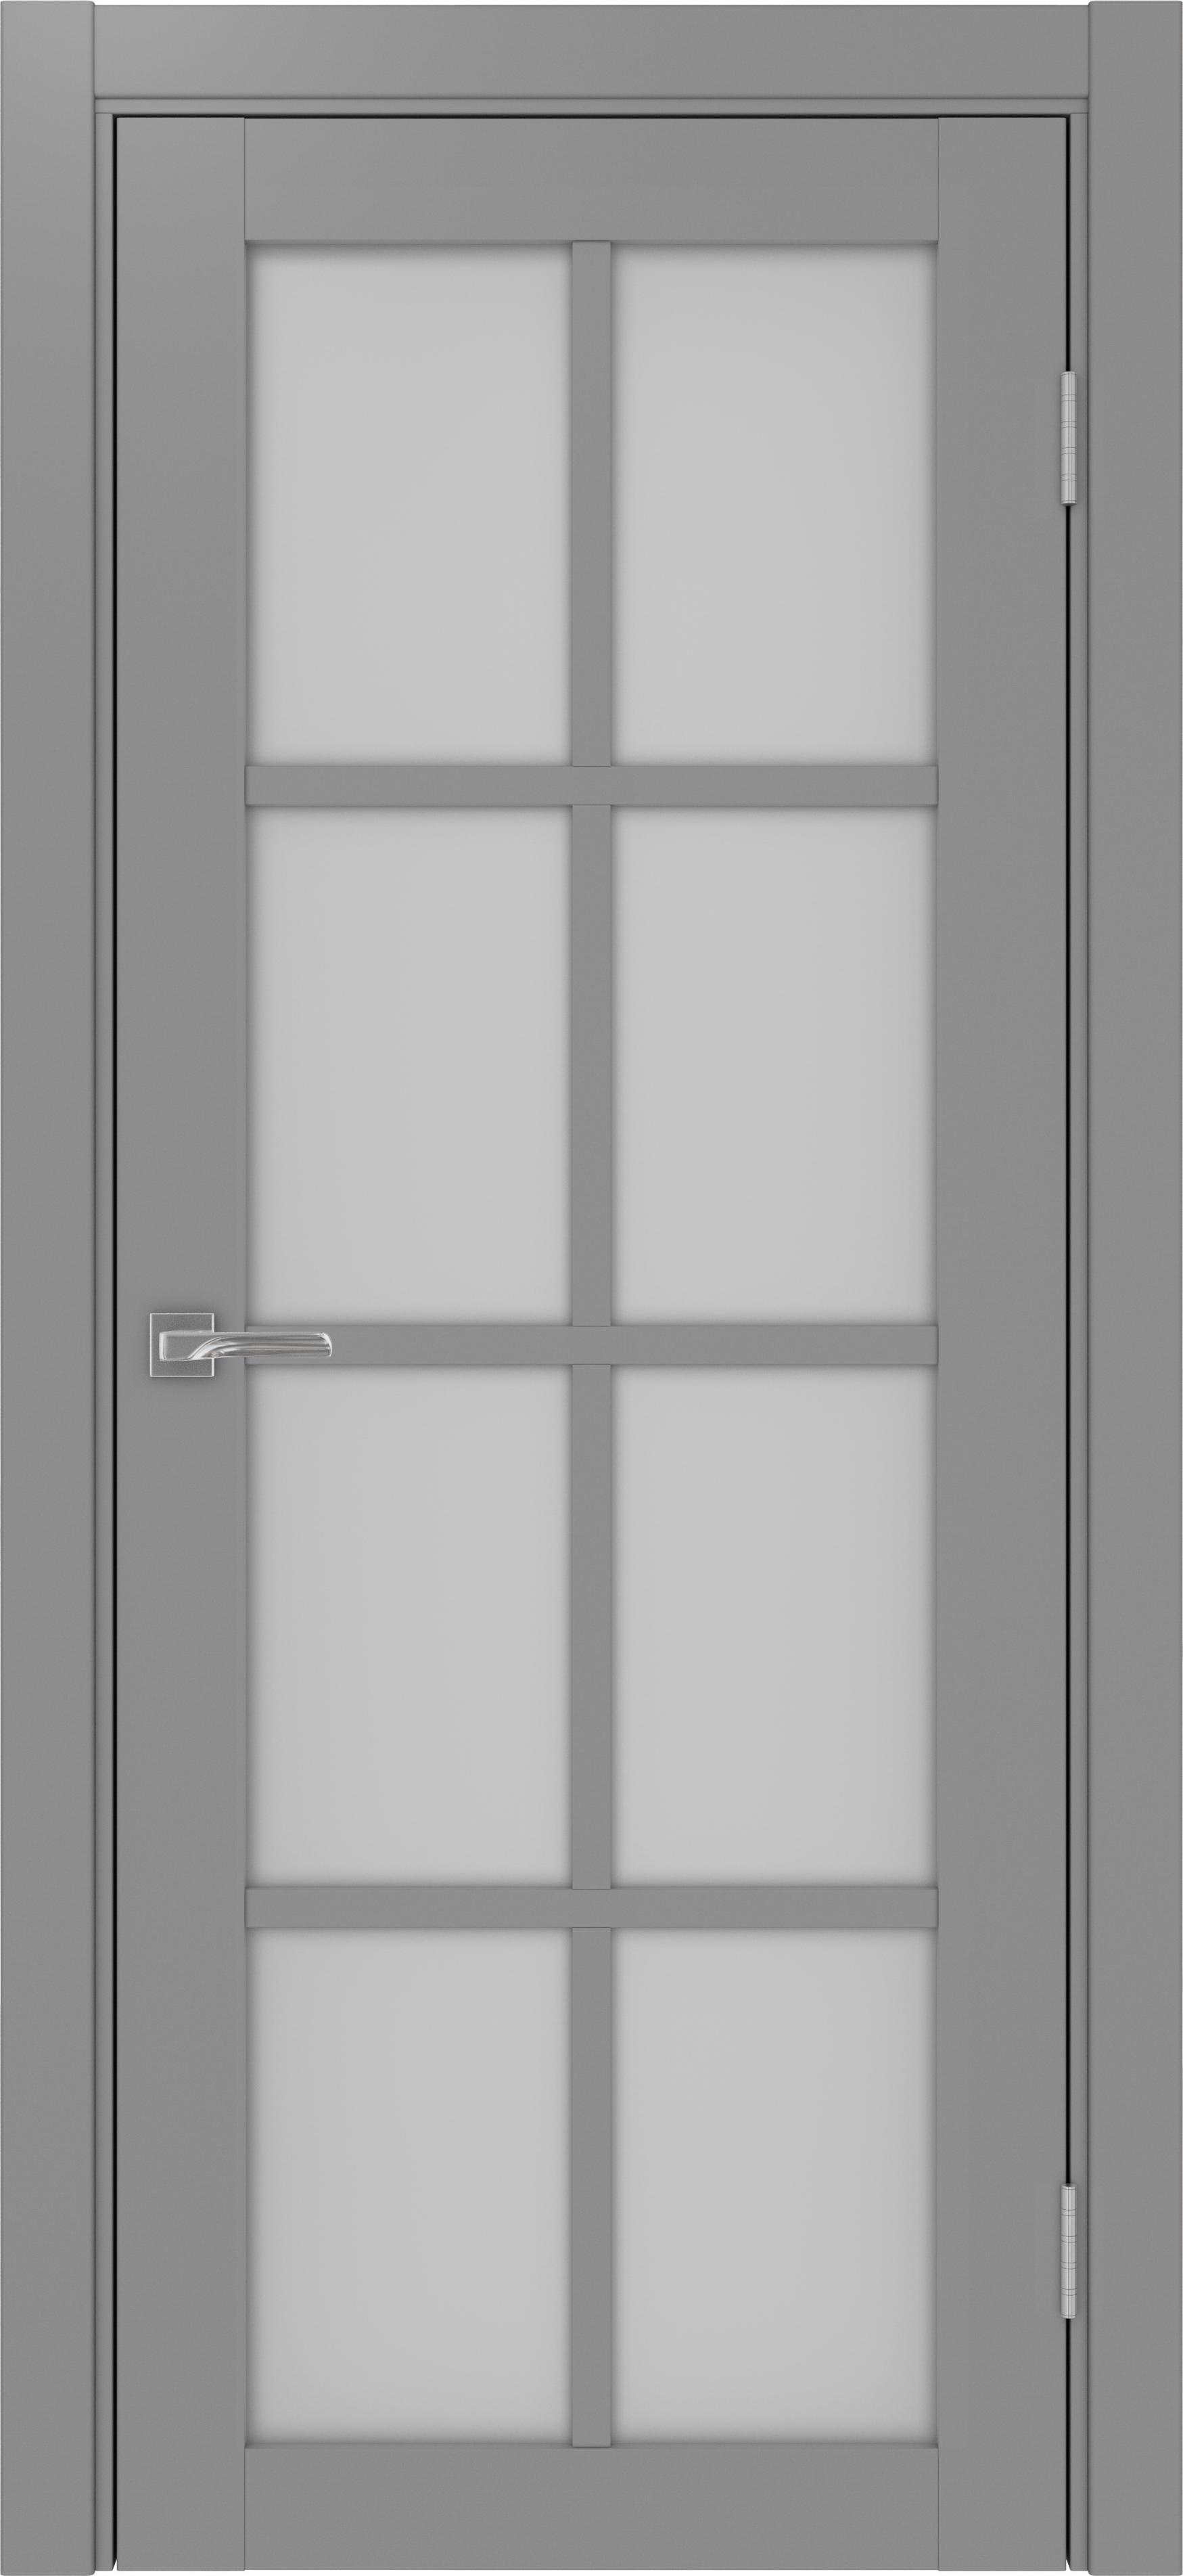 Межкомнатная дверь «Турин 541.2222 Серый» стекло сатин